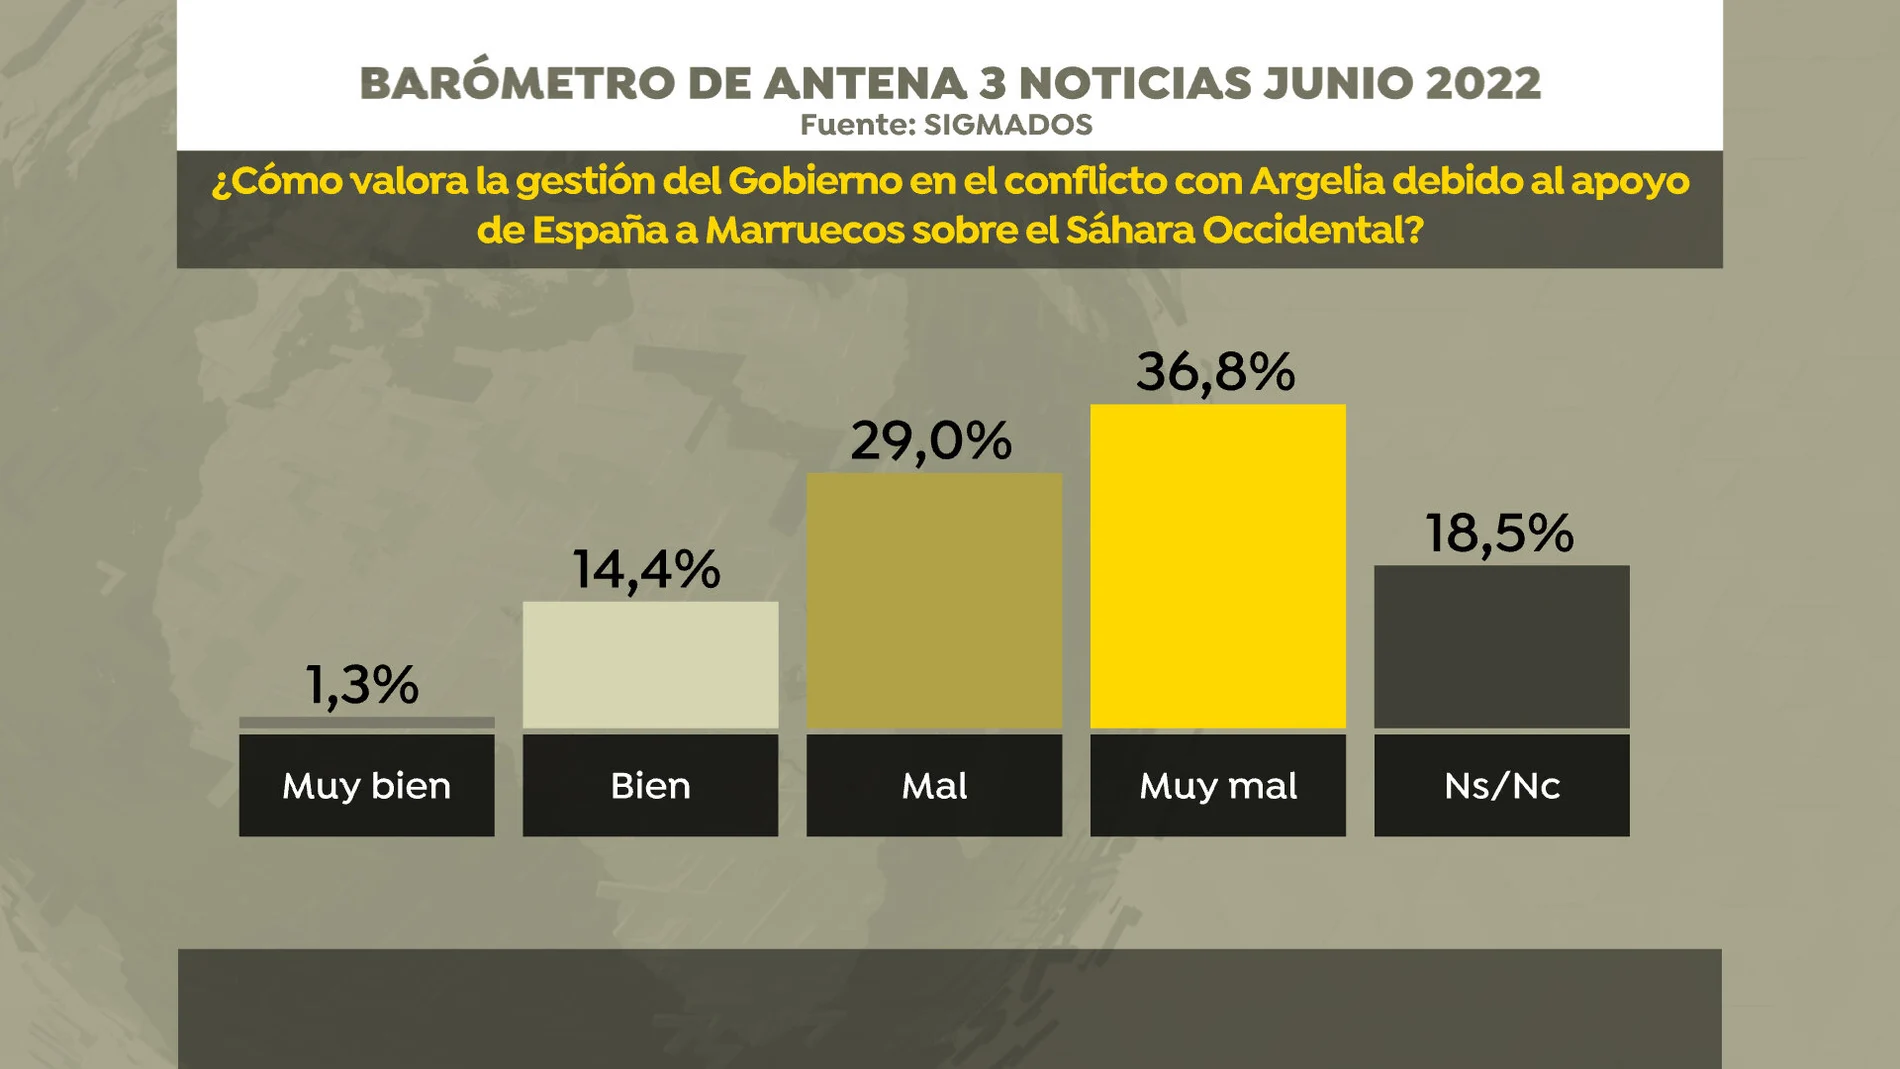 Barómetro de Antena 3 Noticias sobre la gestión del Gobierno en su relación con Argelia